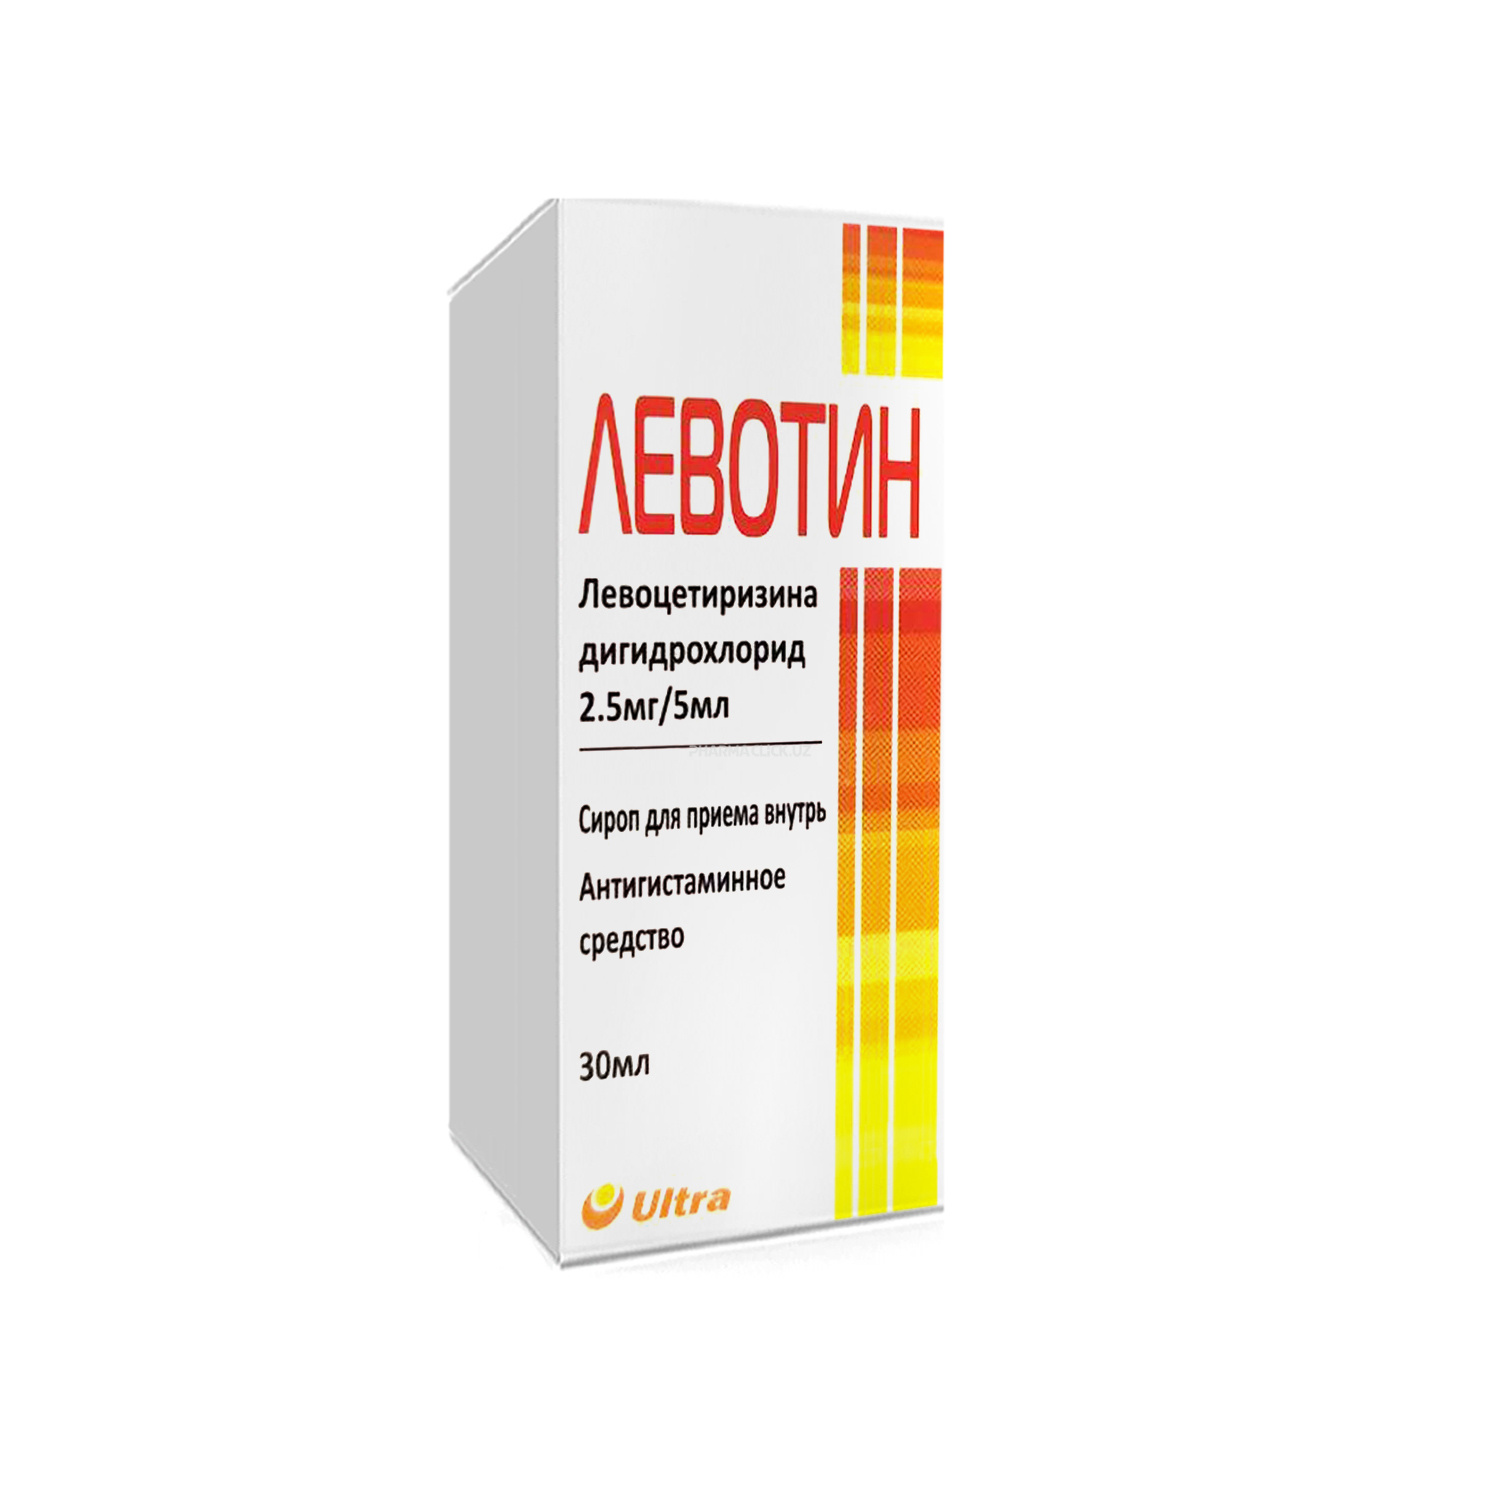 Levotin sirop 2,5 mg / 5 ml dan 30 ml